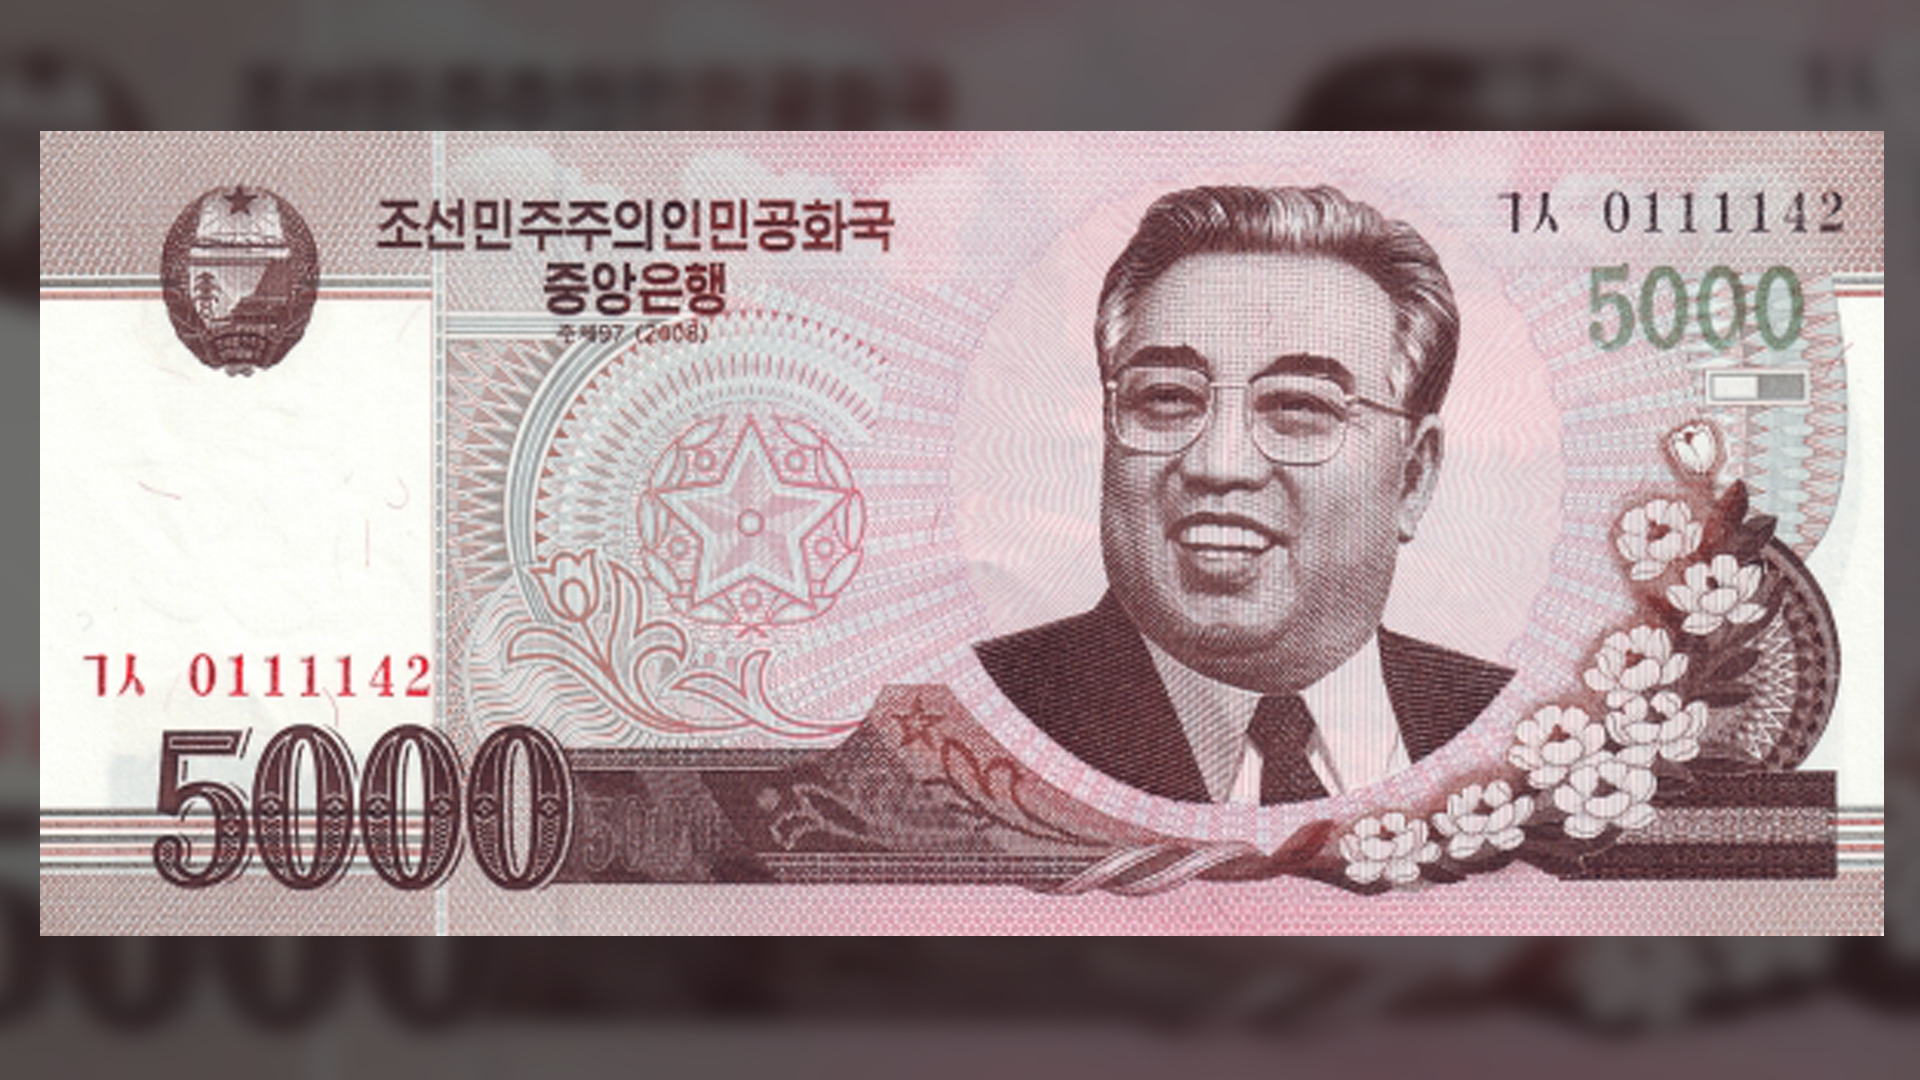 moneta conmemorativo bloomberg broadband choco neighbor koreans aroundtheworld